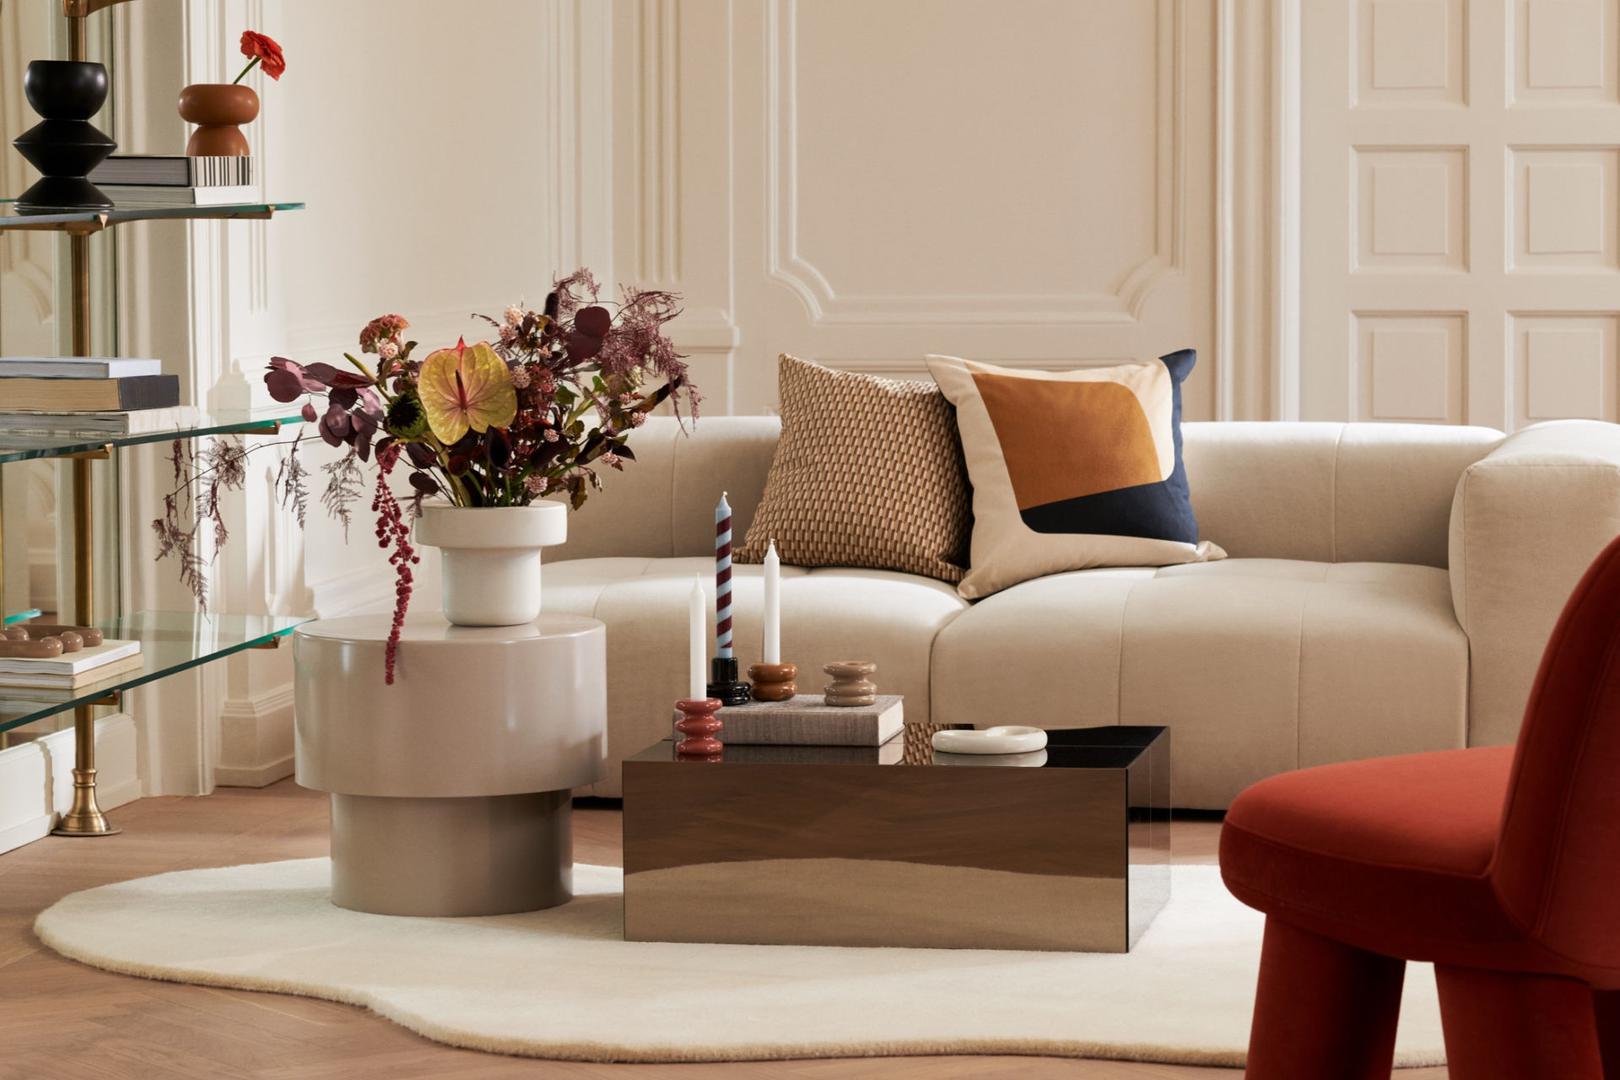 Brend specijaliziran za uređenje doma - H&M Home - predstavio je novu, jesensku kolekciju sitnog namještaja i detalja za dom